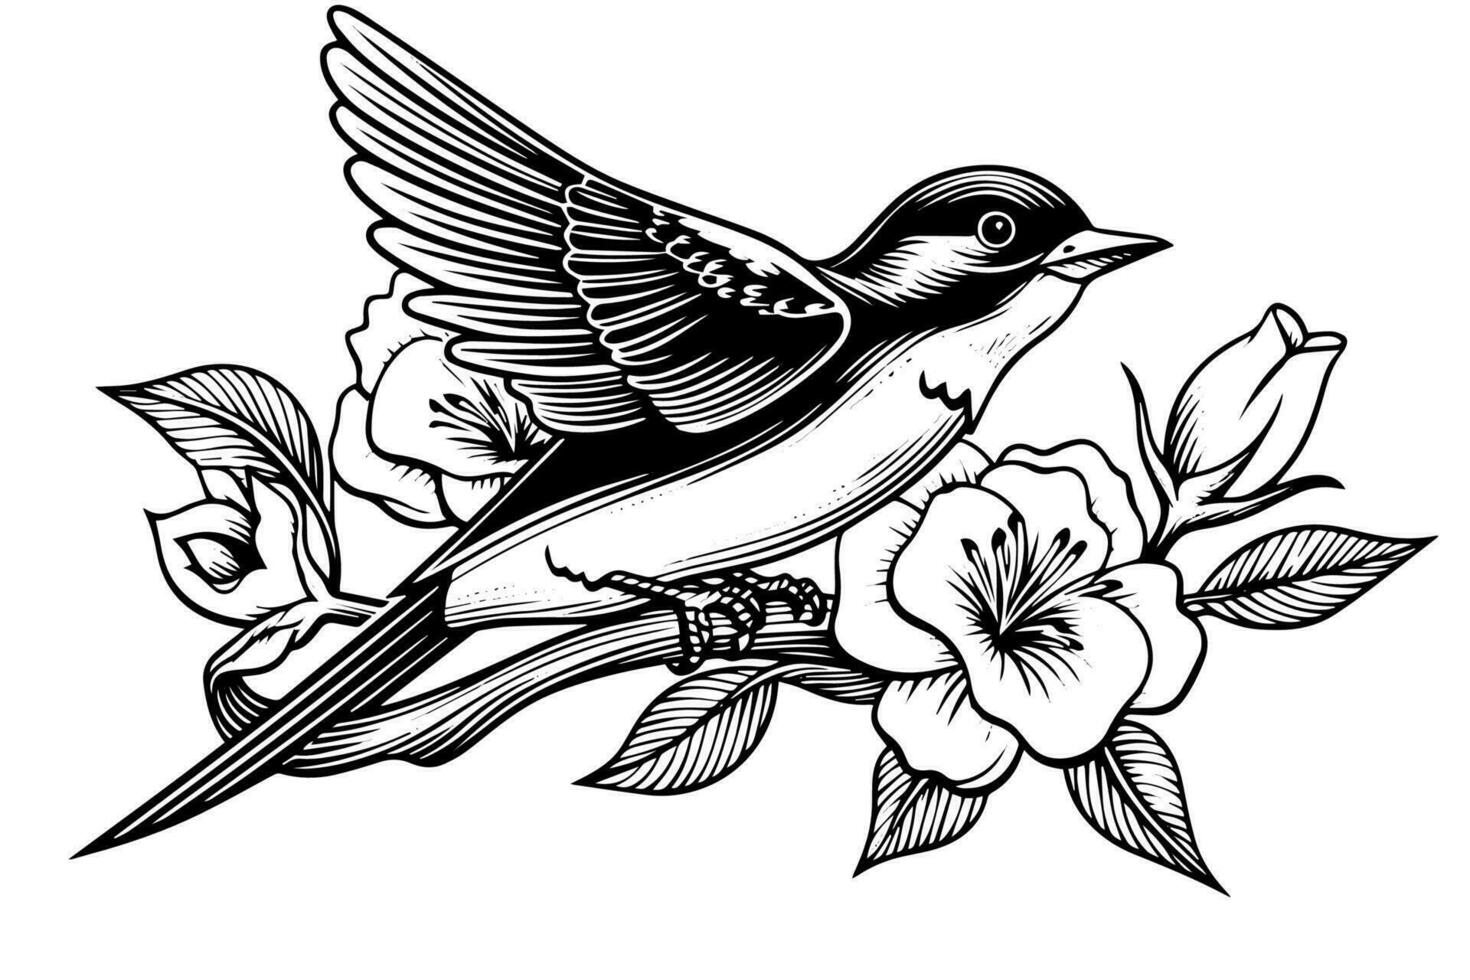 tinta bosquejo de golondrina sentado en un rama. mano dibujado grabado estilo vector ilustración.